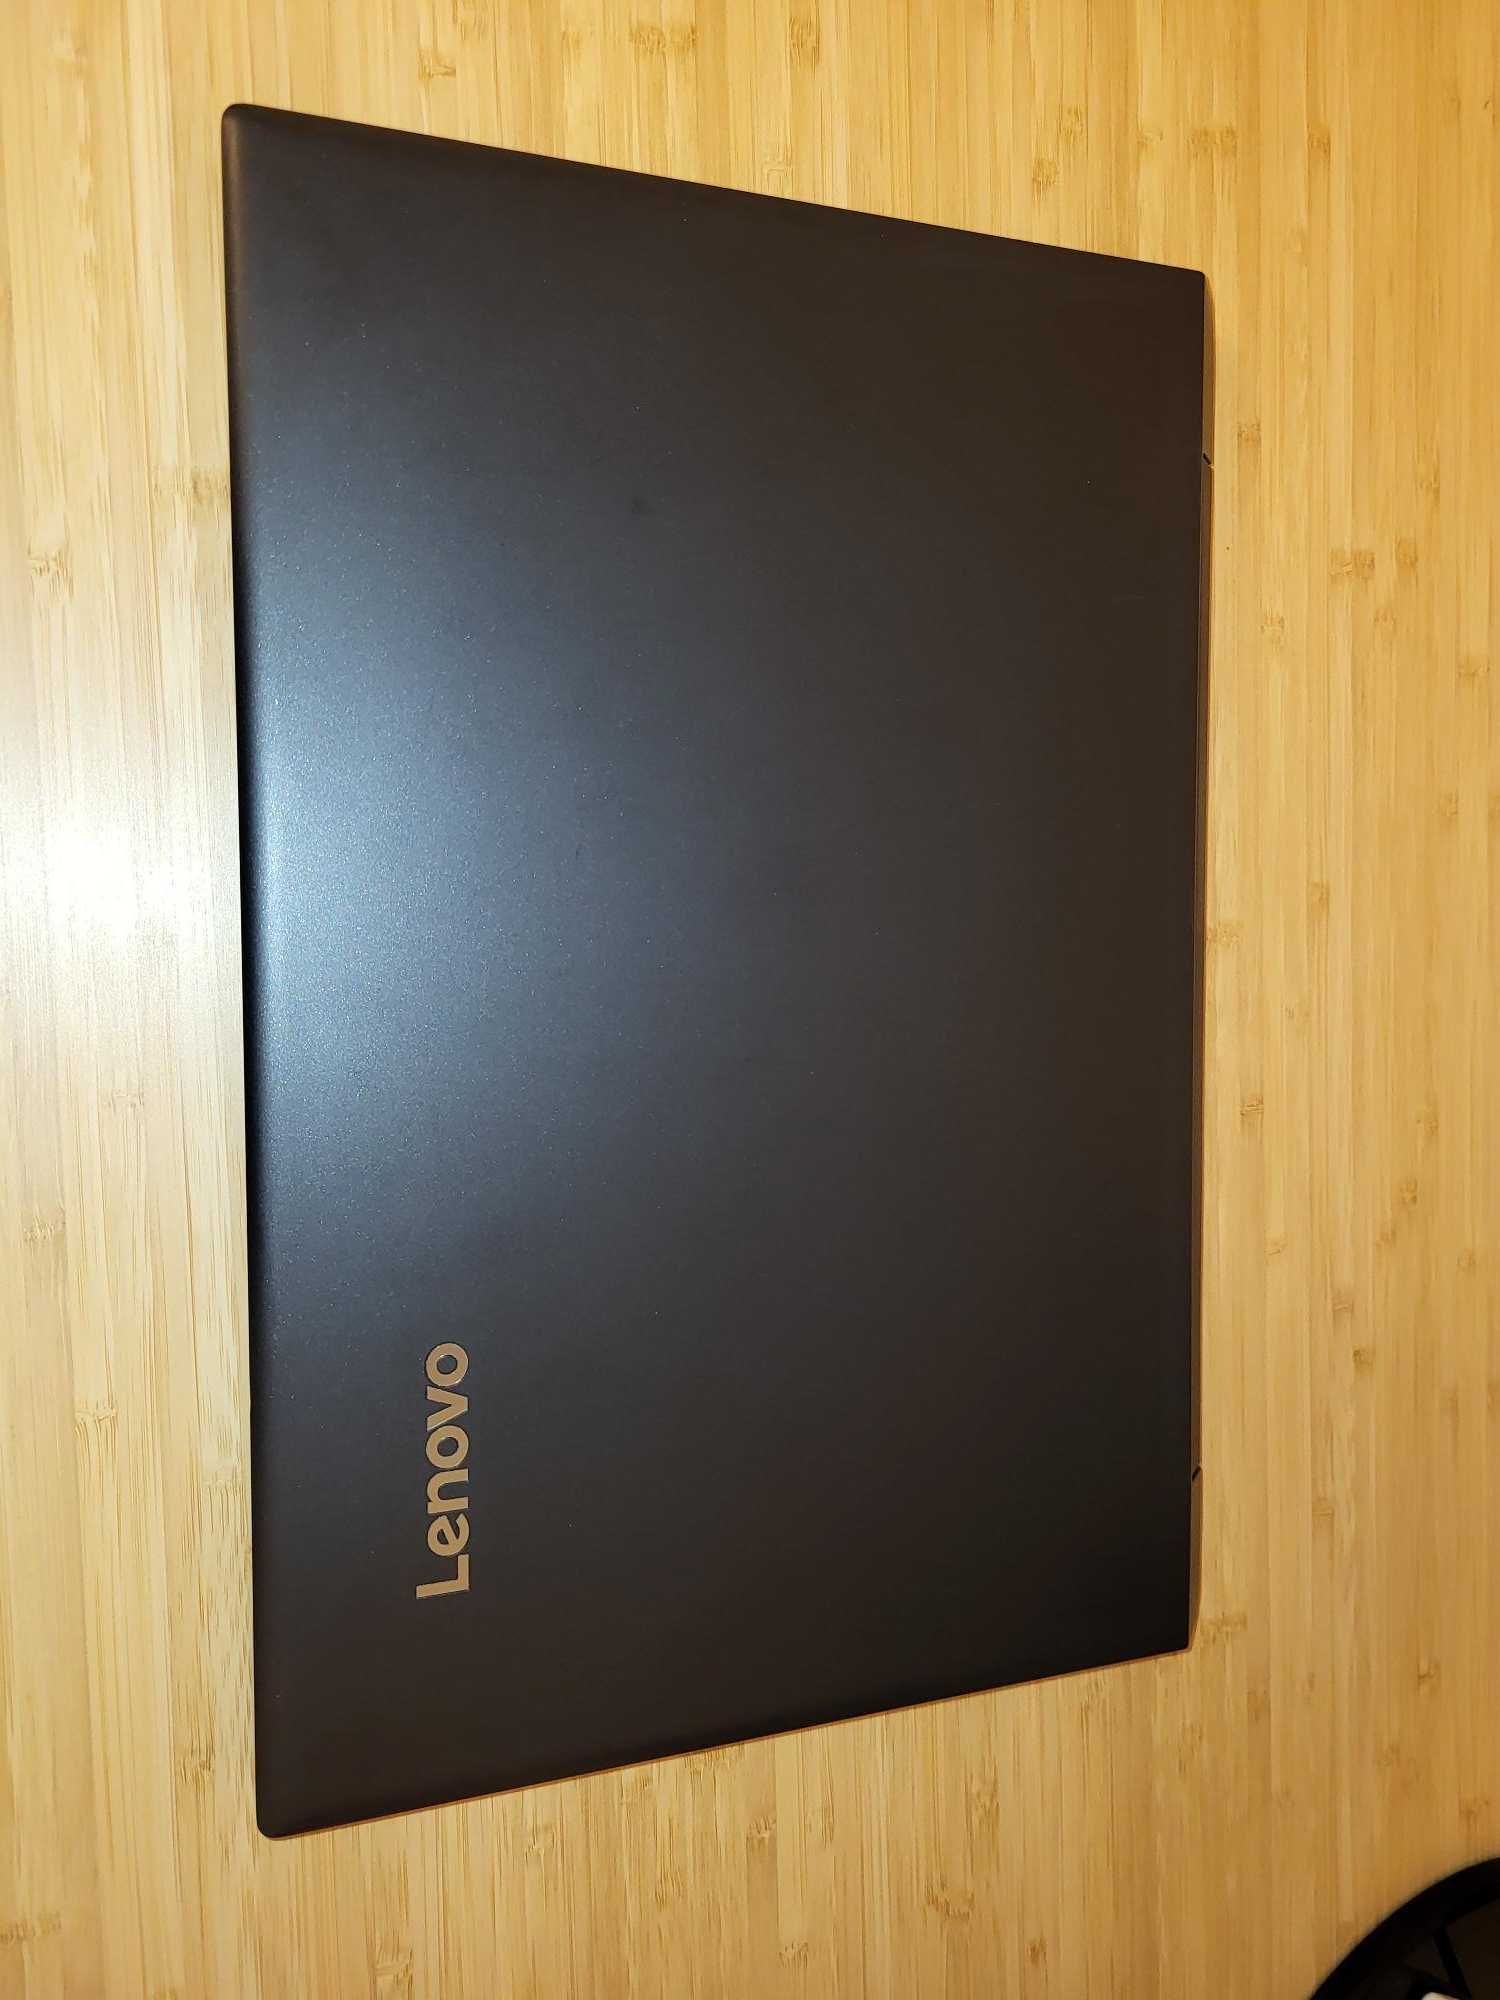 Laptop Lenovo V310-15ISK i7